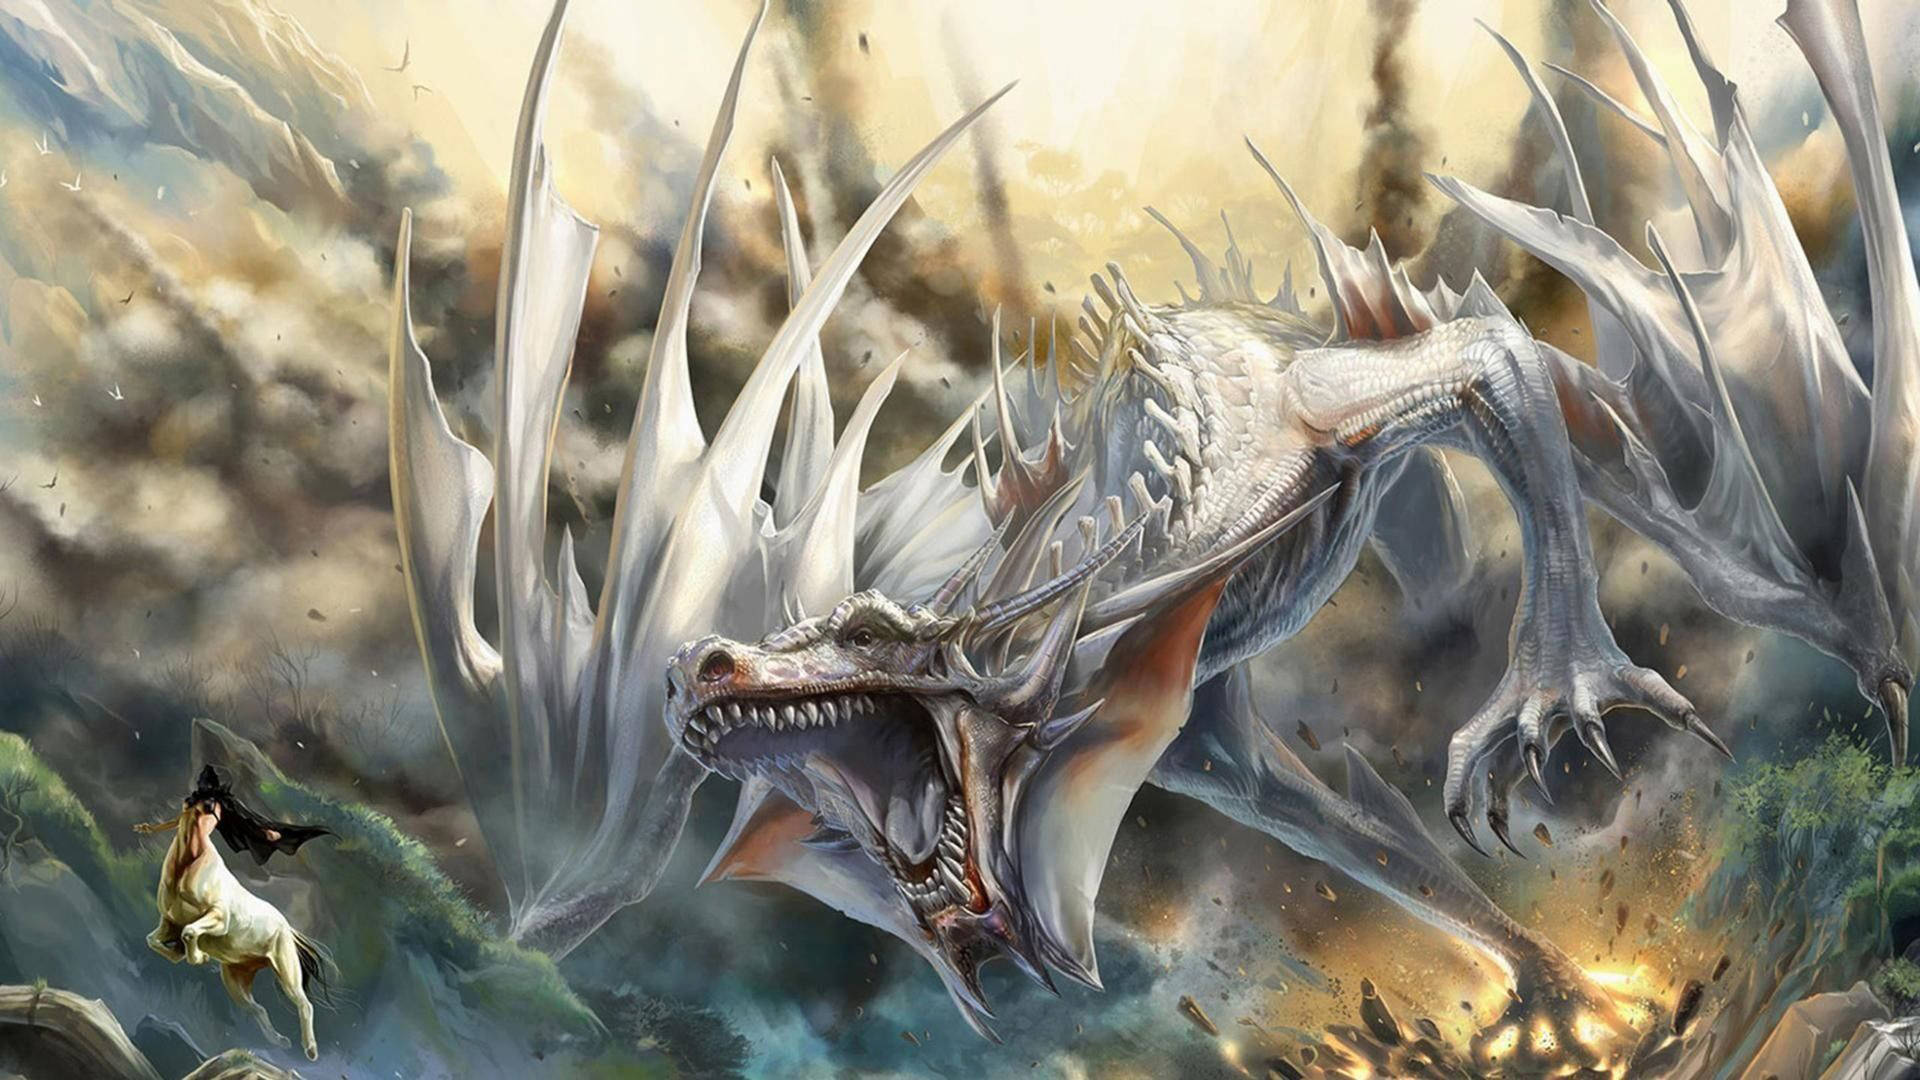 Hybrid Eastern Dragon